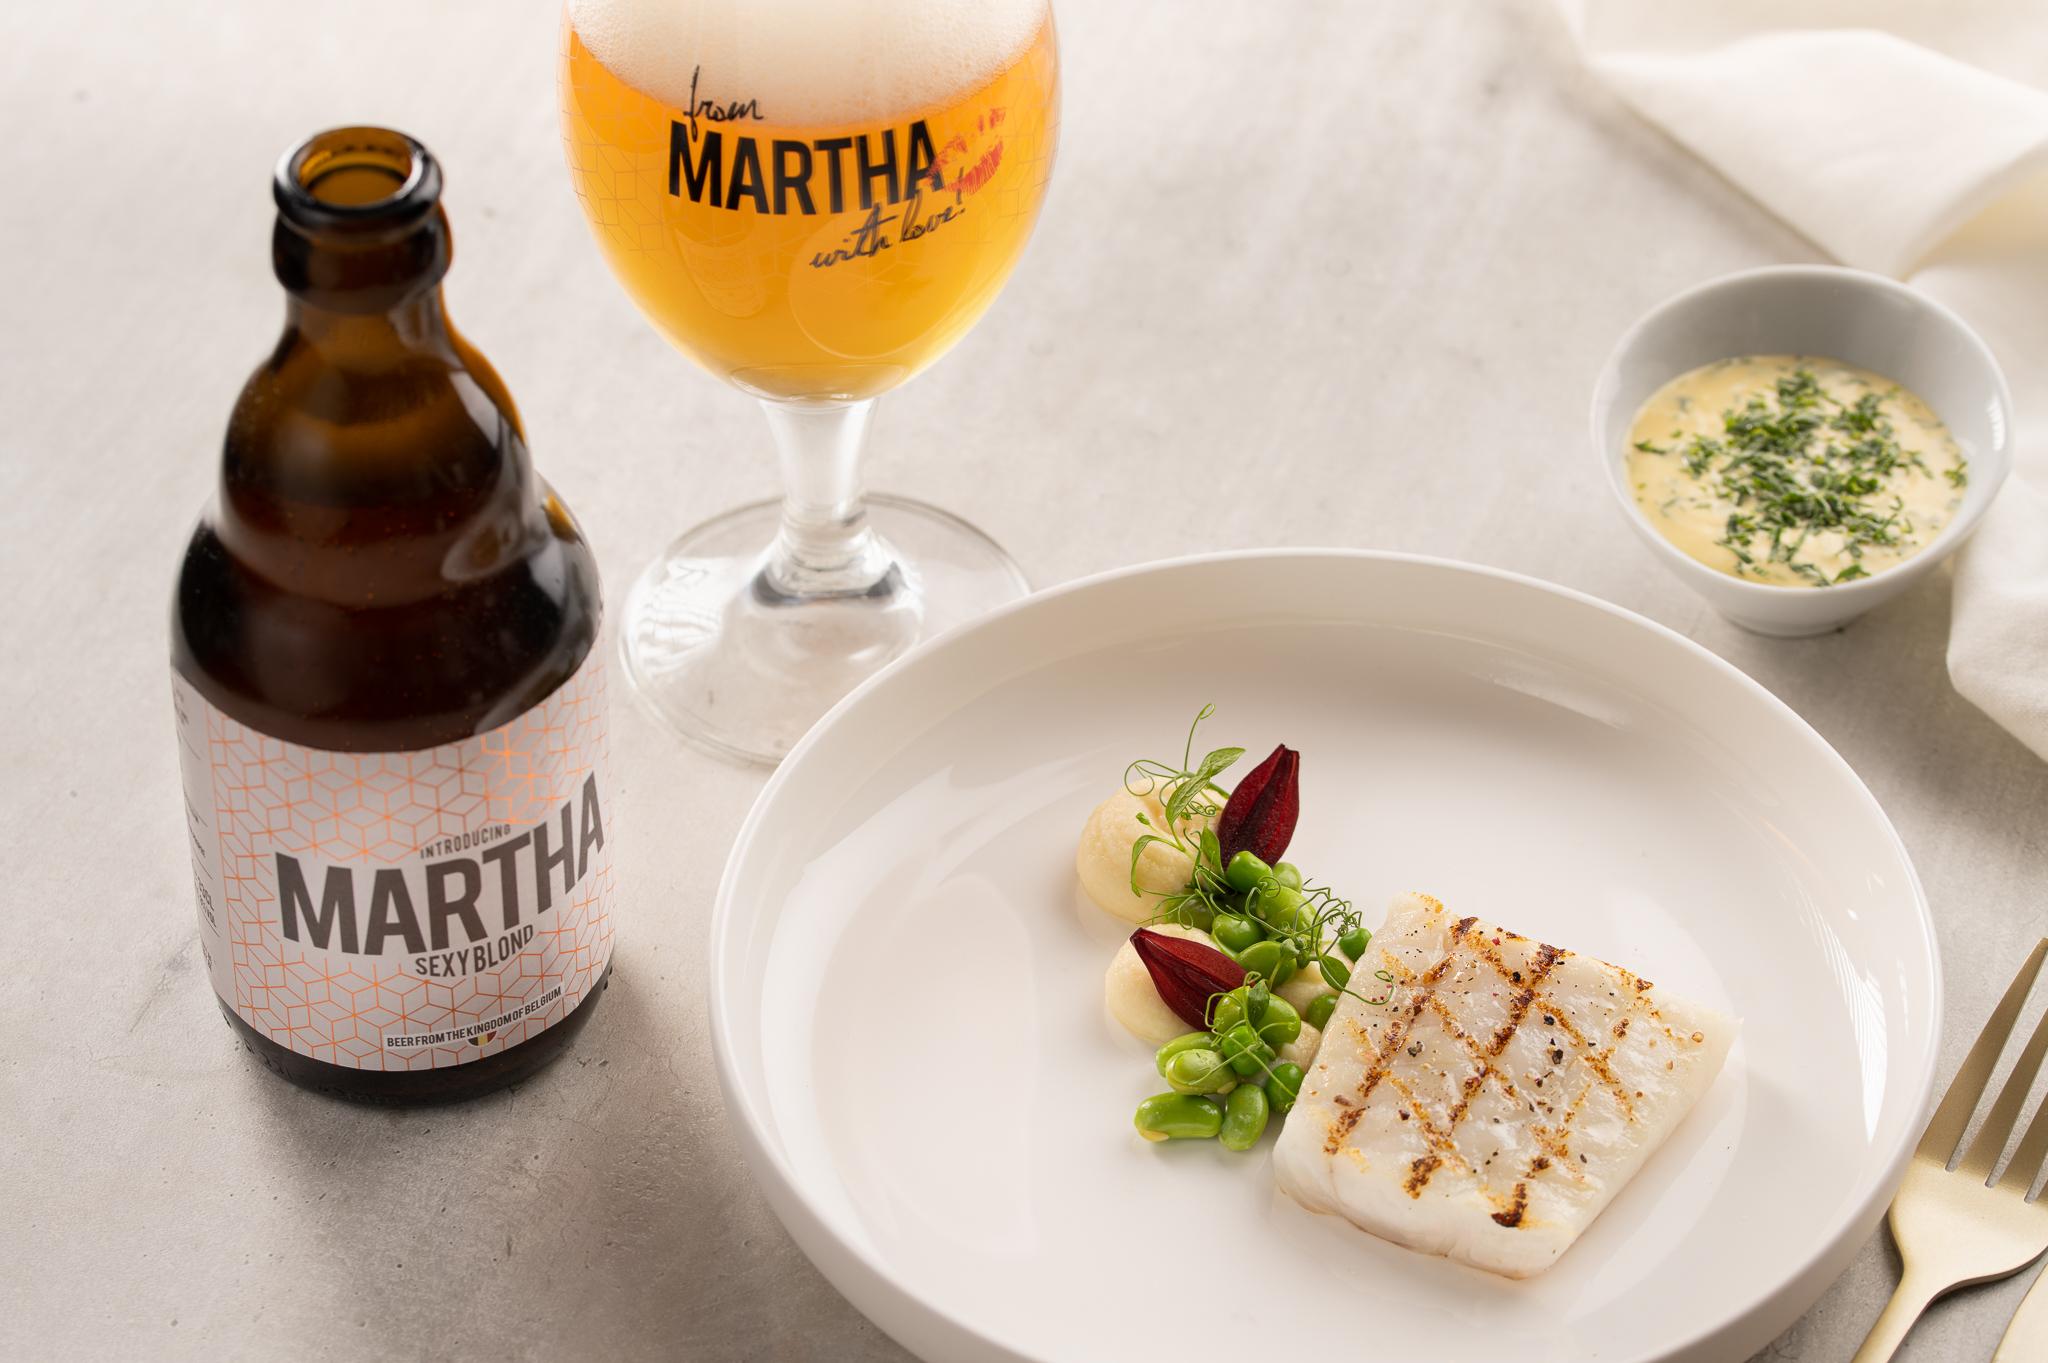 Martha beer - Sexy Blond